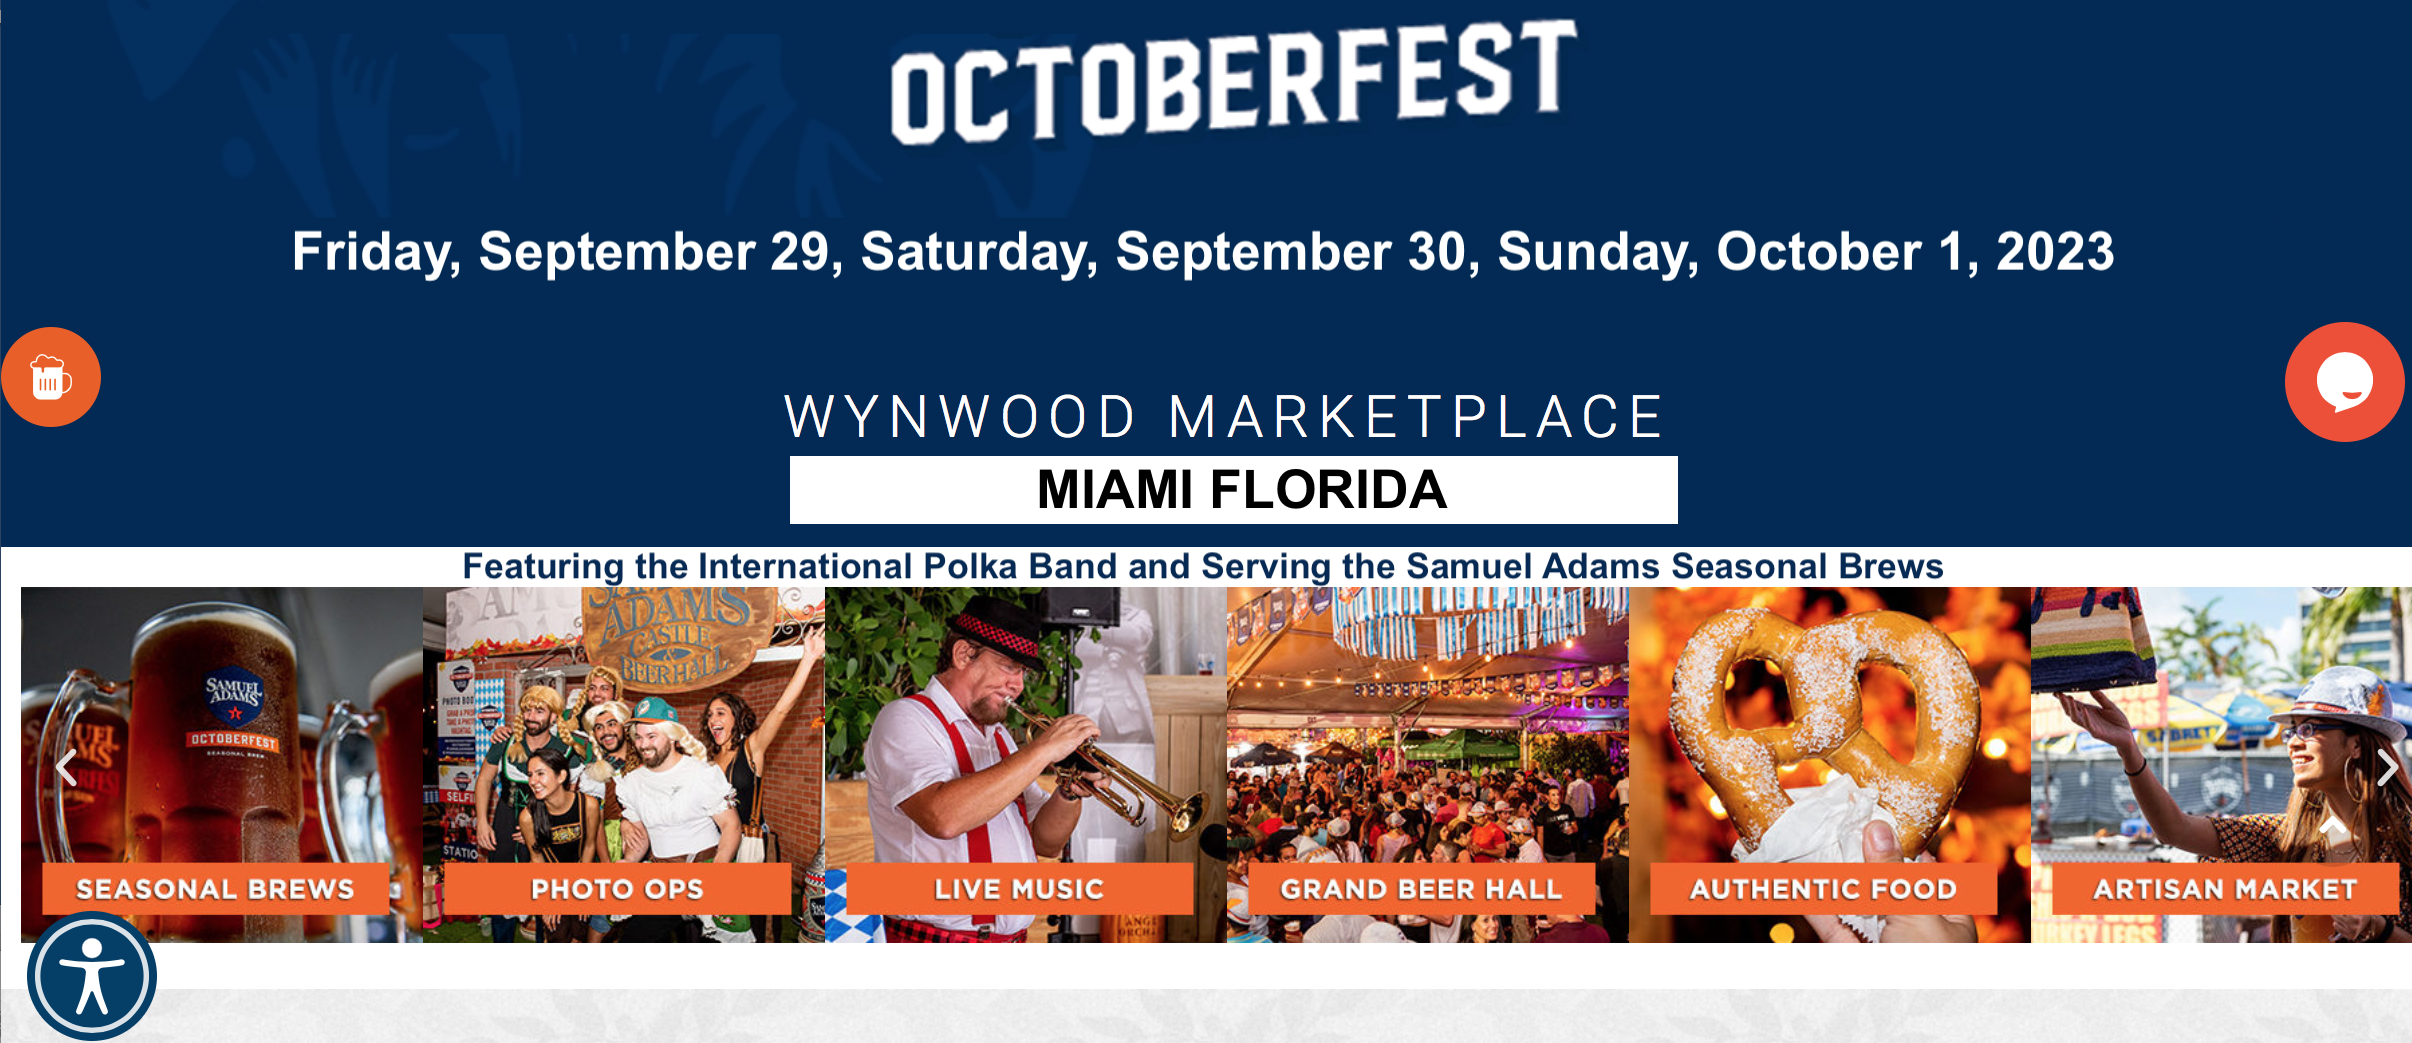 South Florida Octoberfest Wynwood Marketplace Miami